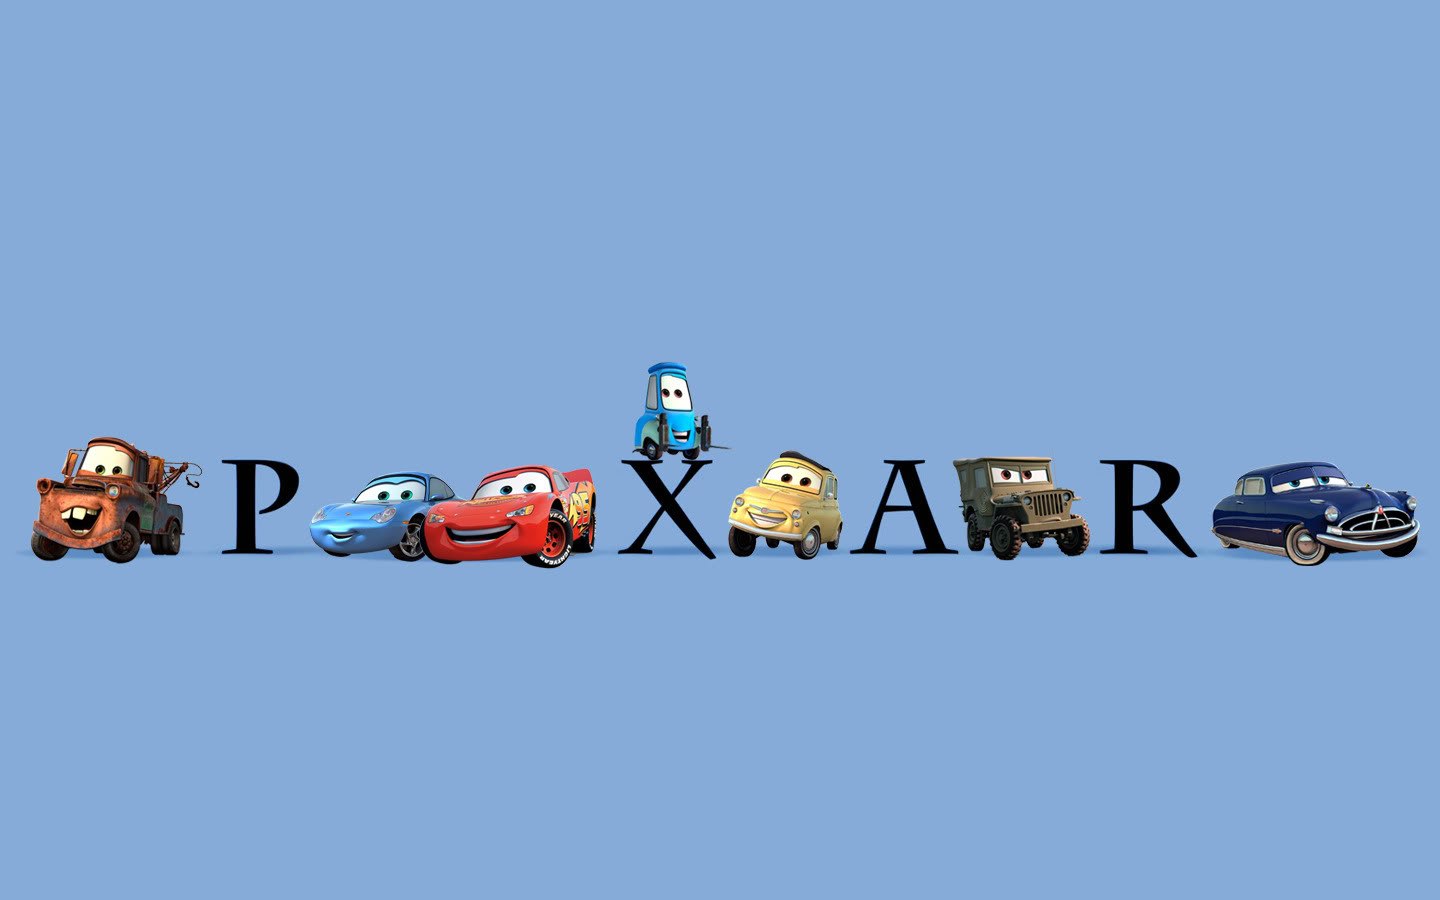 Какие пиксар. Дисней Пиксар студия. Персонажи студии Пиксар. Заставка студии Пиксар. Pixar логотип.